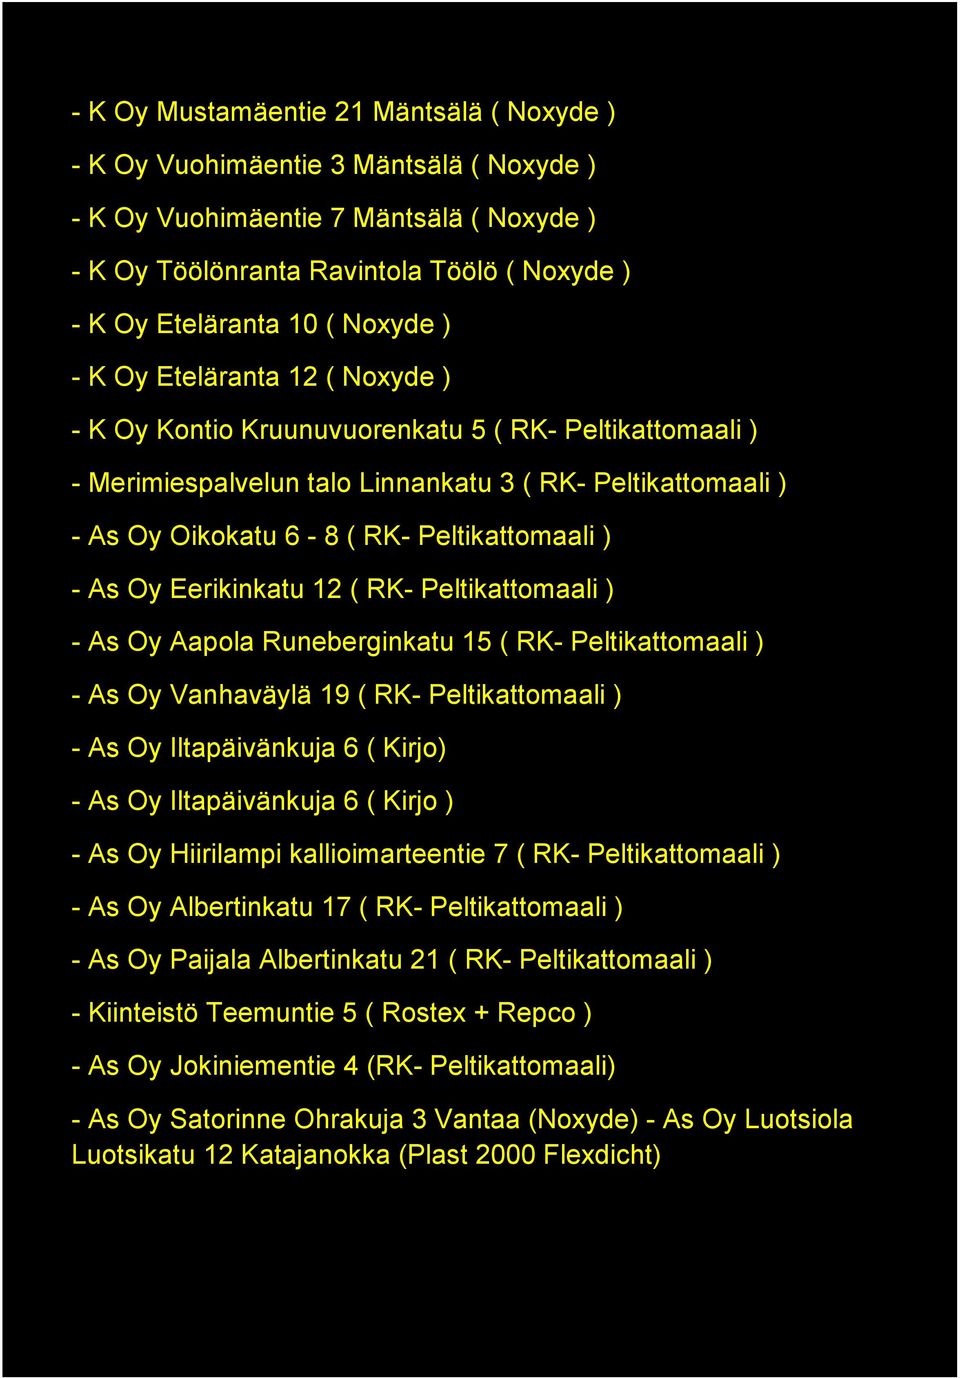 Peltikattomaali ) - As Oy Eerikinkatu 12 ( RK- Peltikattomaali ) - As Oy Aapola Runeberginkatu 15 ( RK- Peltikattomaali ) - As Oy Vanhaväylä 19 ( RK- Peltikattomaali ) - As Oy Iltapäivänkuja 6 (